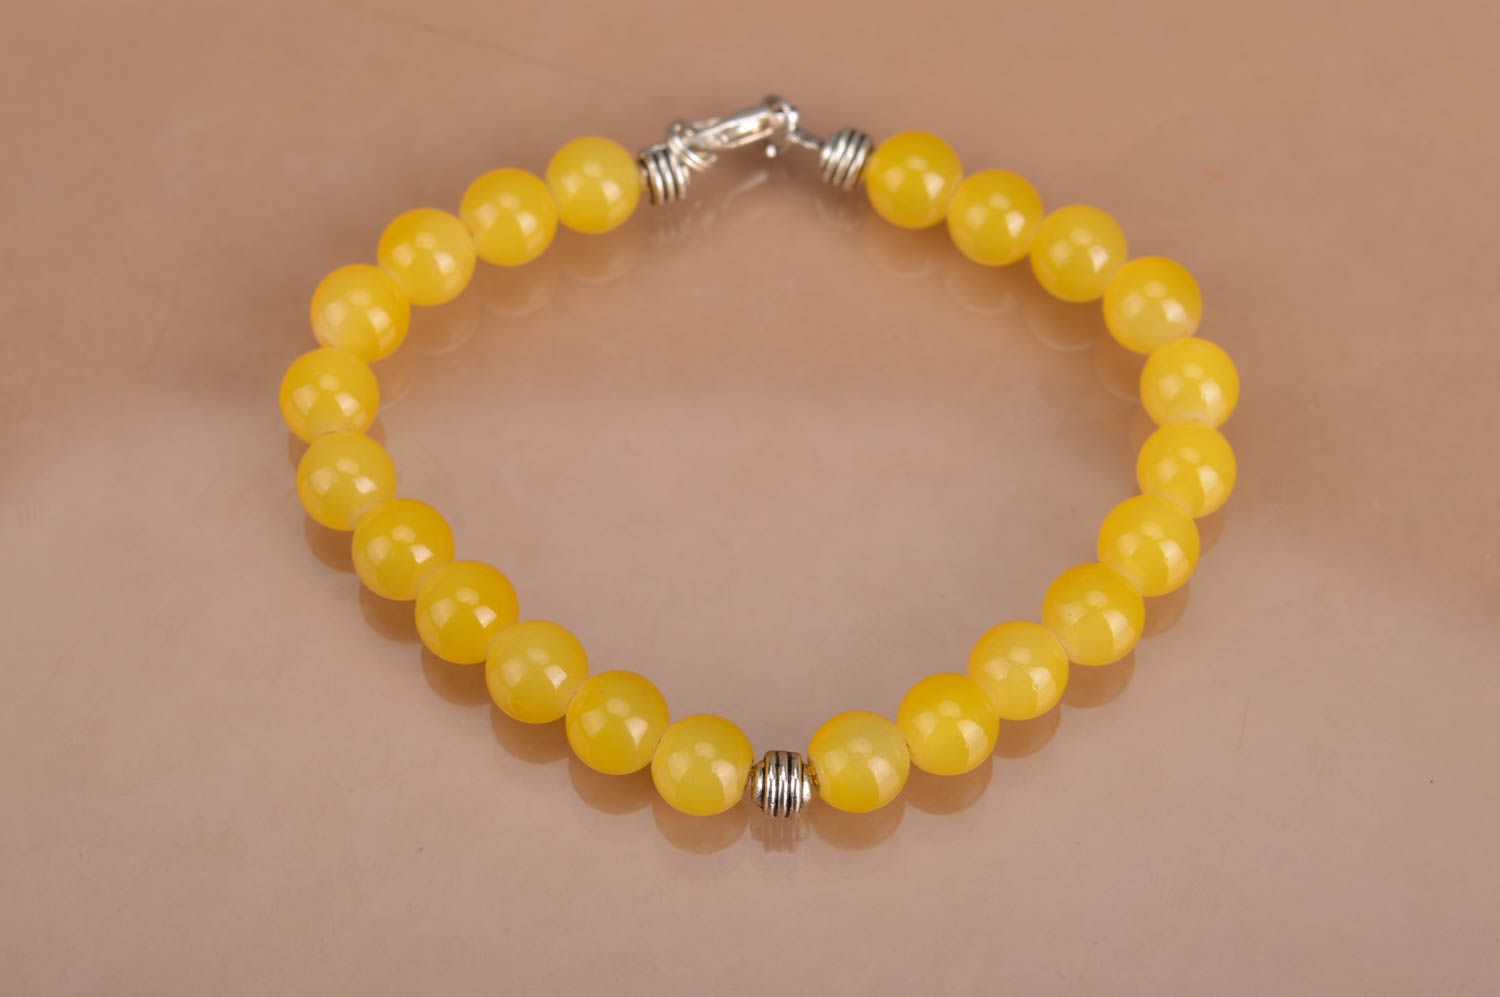 Handmade designer women's wrist bracelet with bright yellow neon beads photo 5